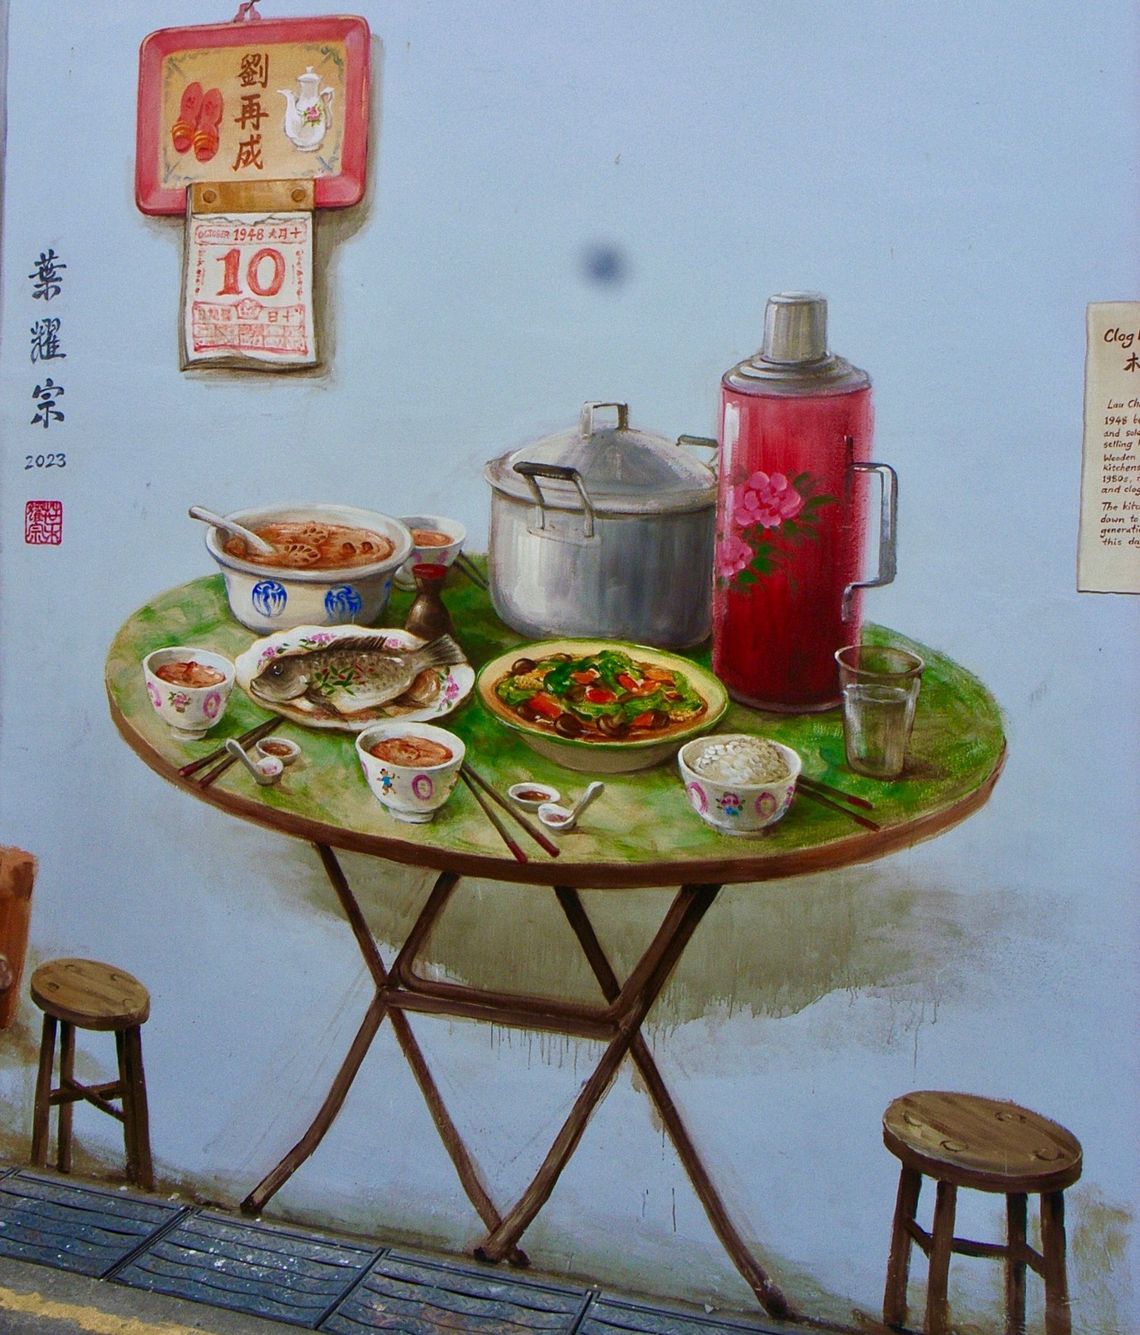 The Chinatown Murals of Yip Yew Chong